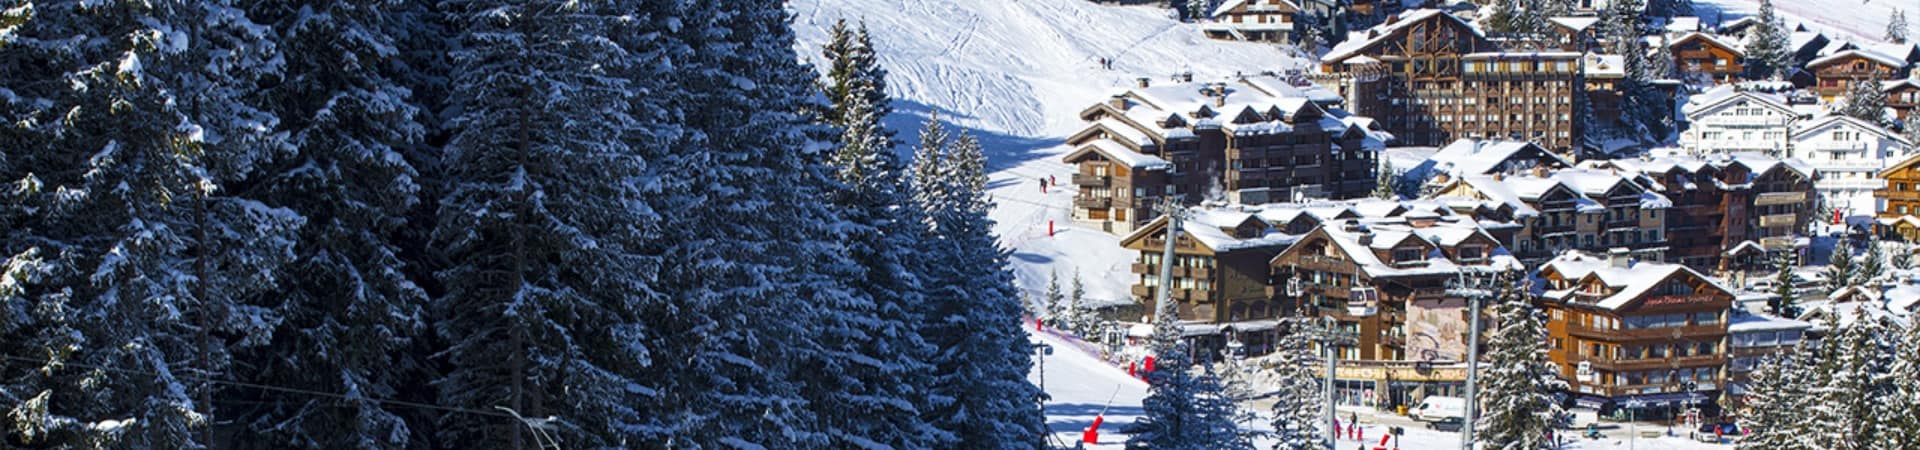 Franca courchevel barriere les neiges pista ski